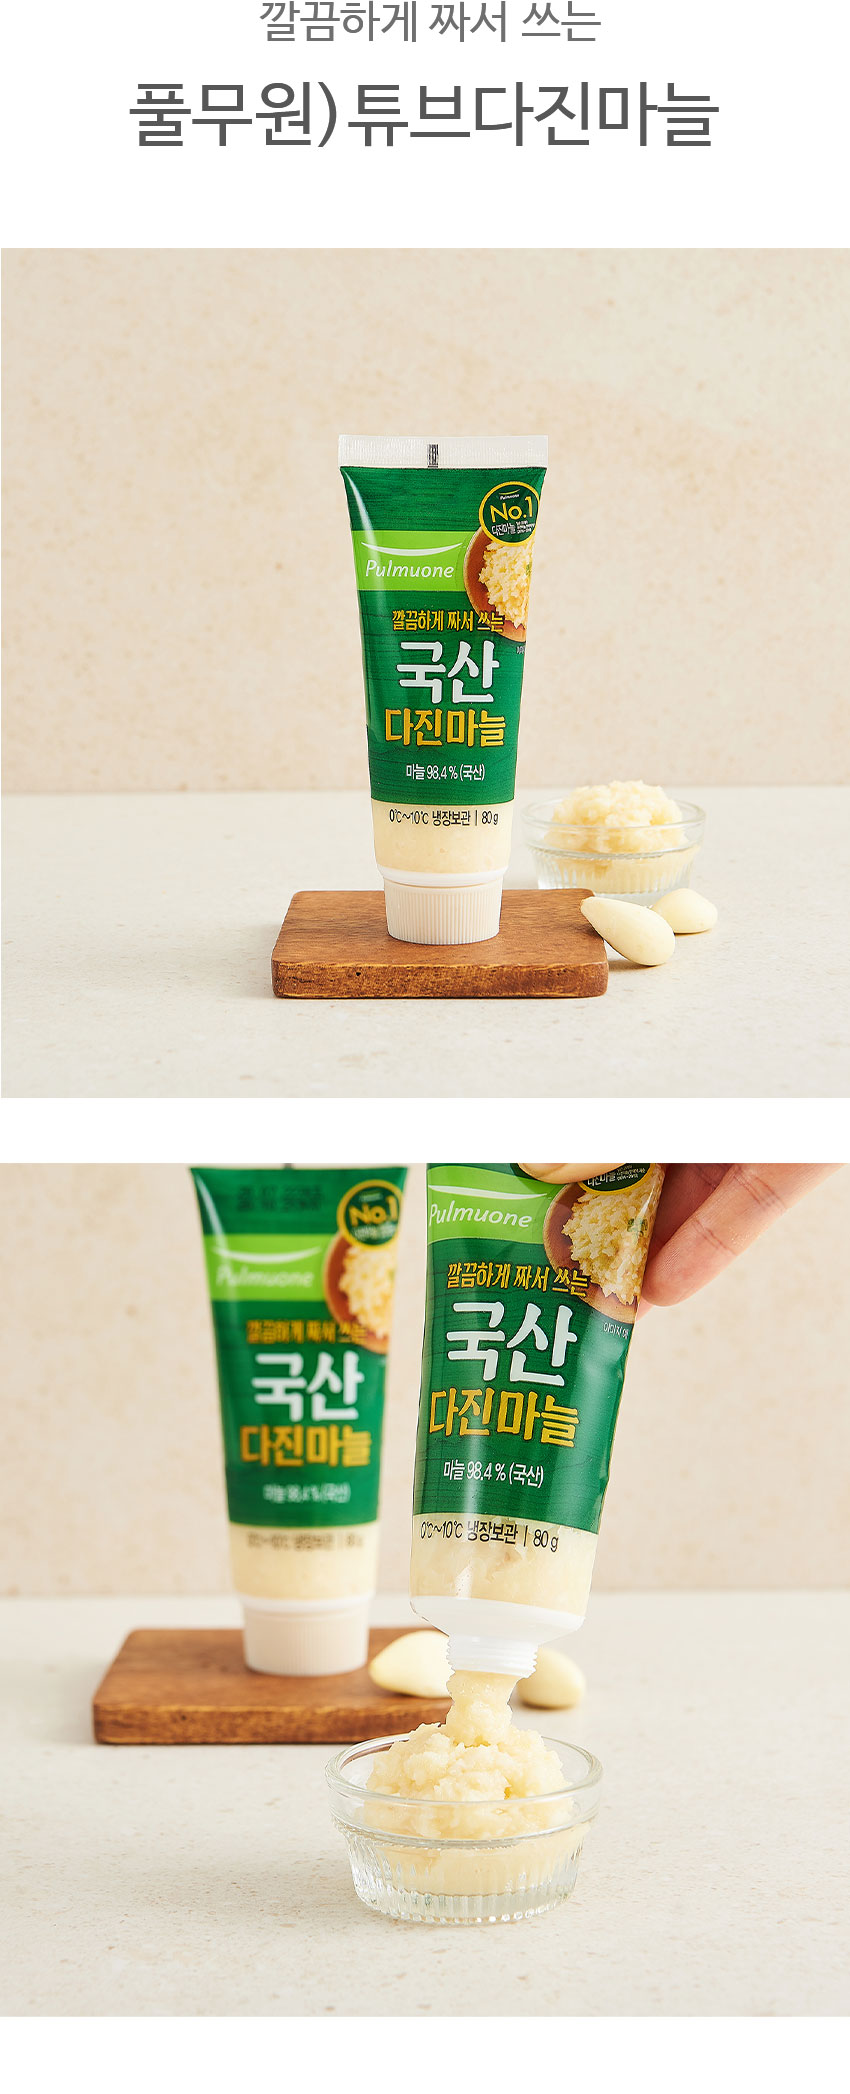 韓國食品-[풀무원] 국산 다진마늘 [튜브] 80g